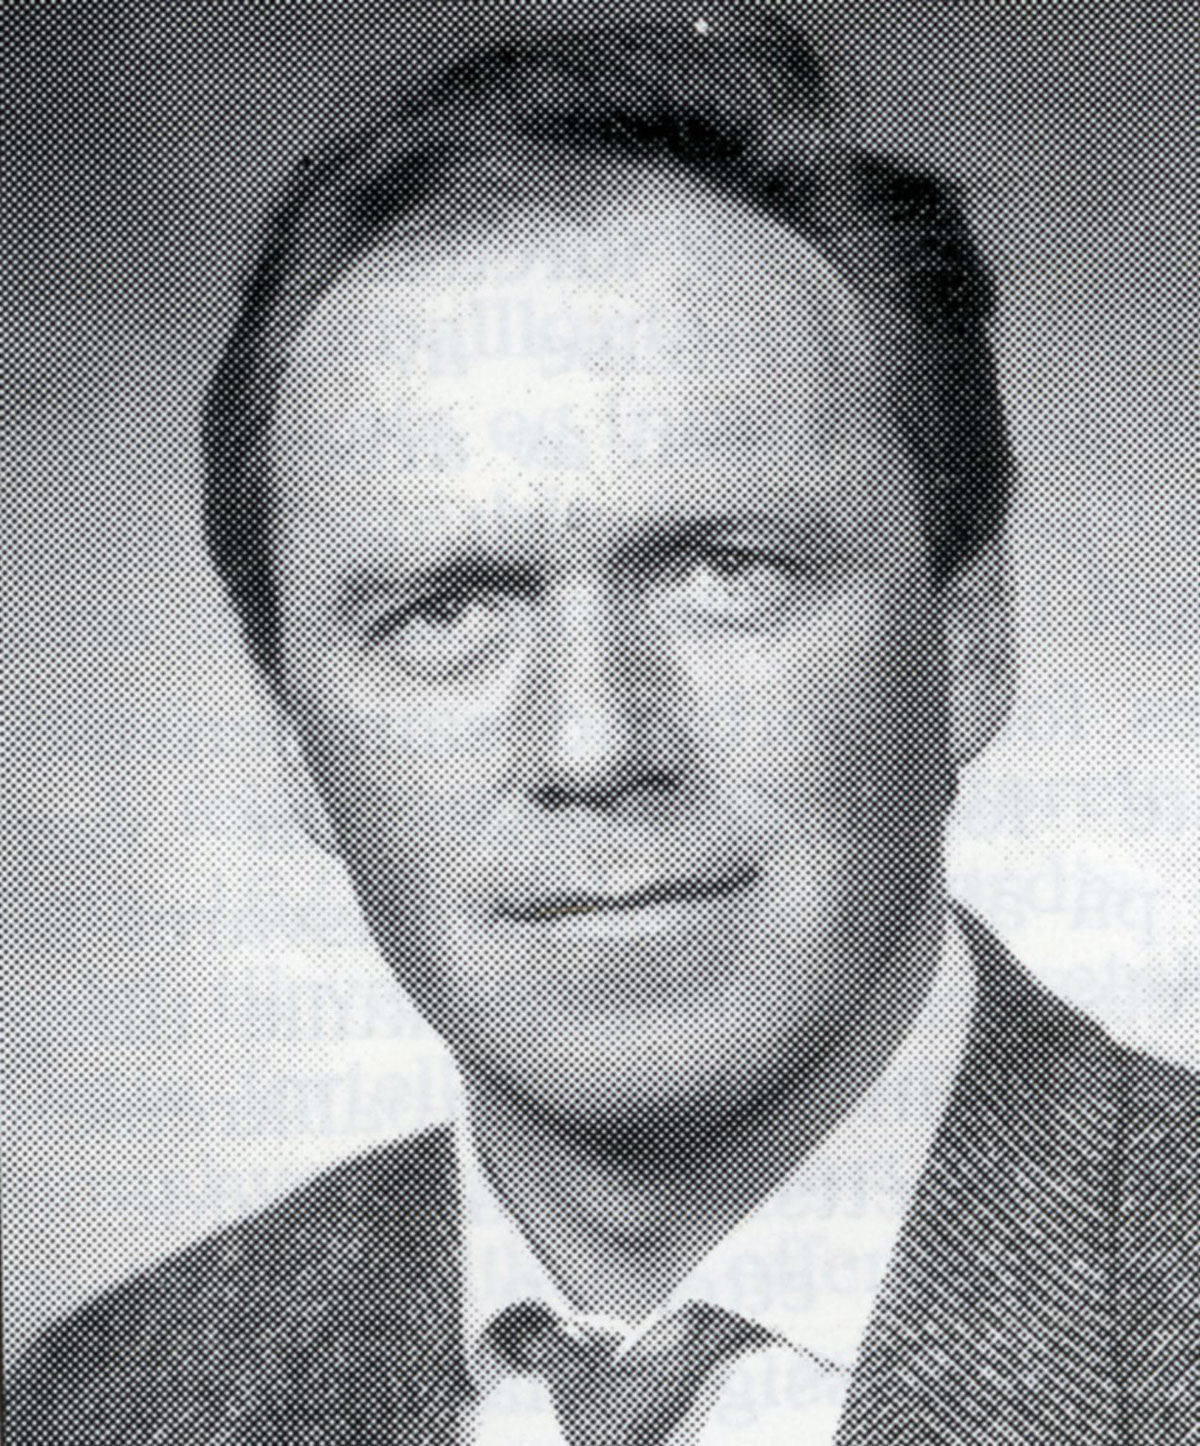 Lars Erik Mikkelsen